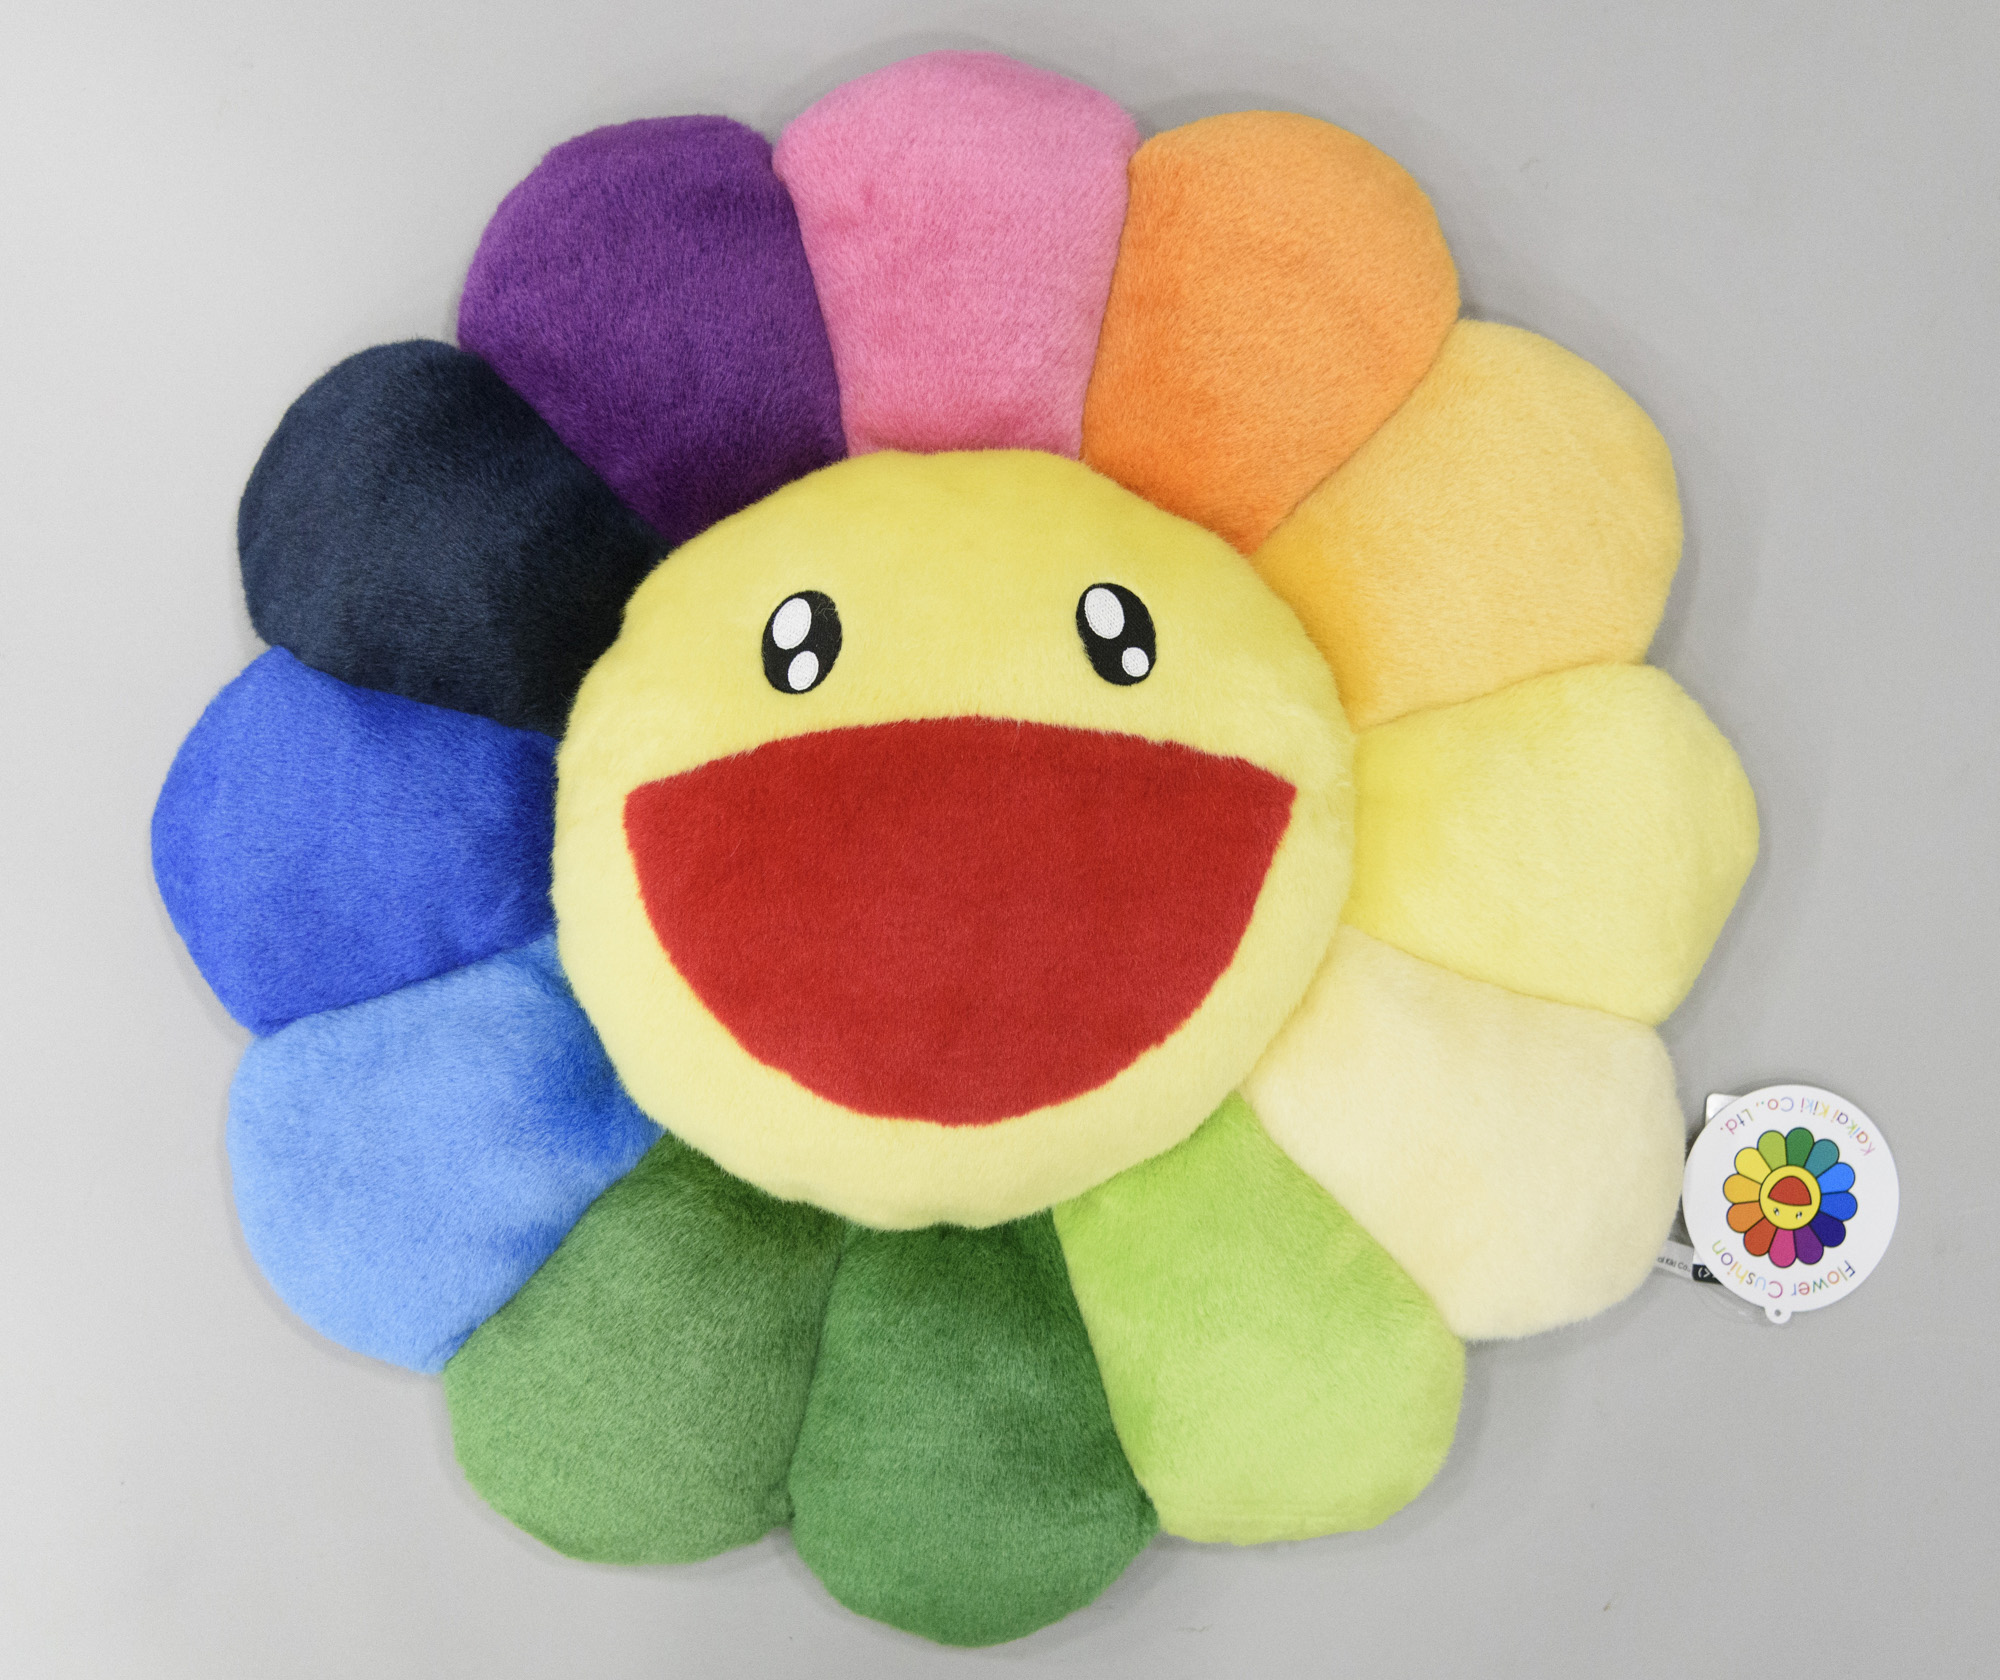 Flower cushion rainbow